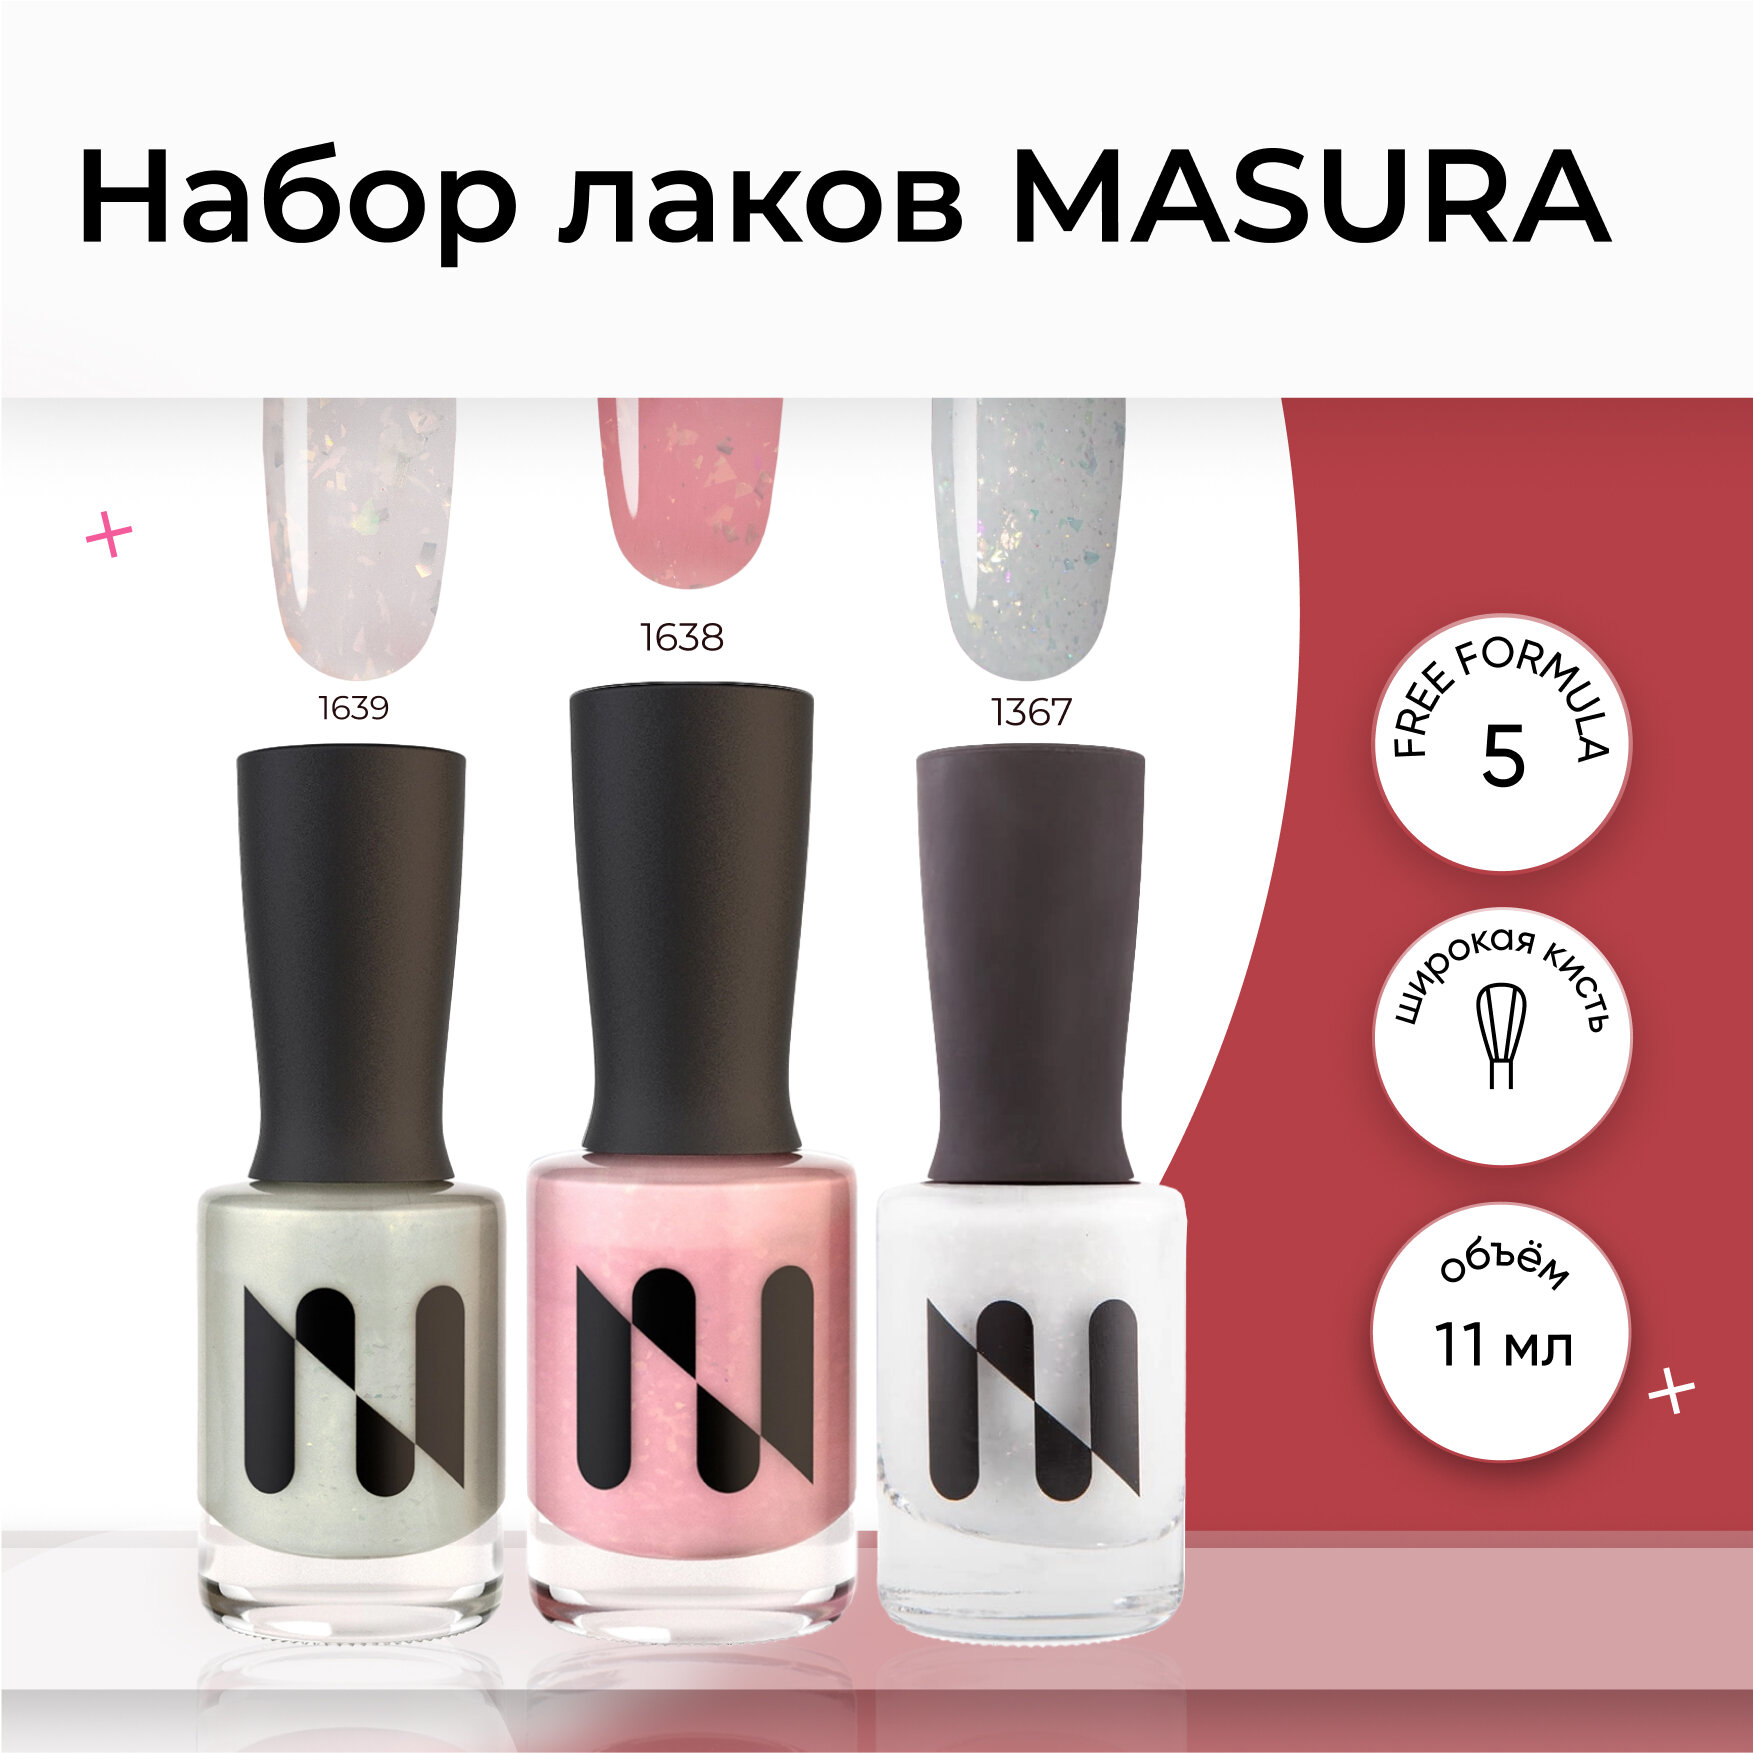 Набор лаков для ногтей MASURA (1367*1638*1639), 11 мл*3 шт